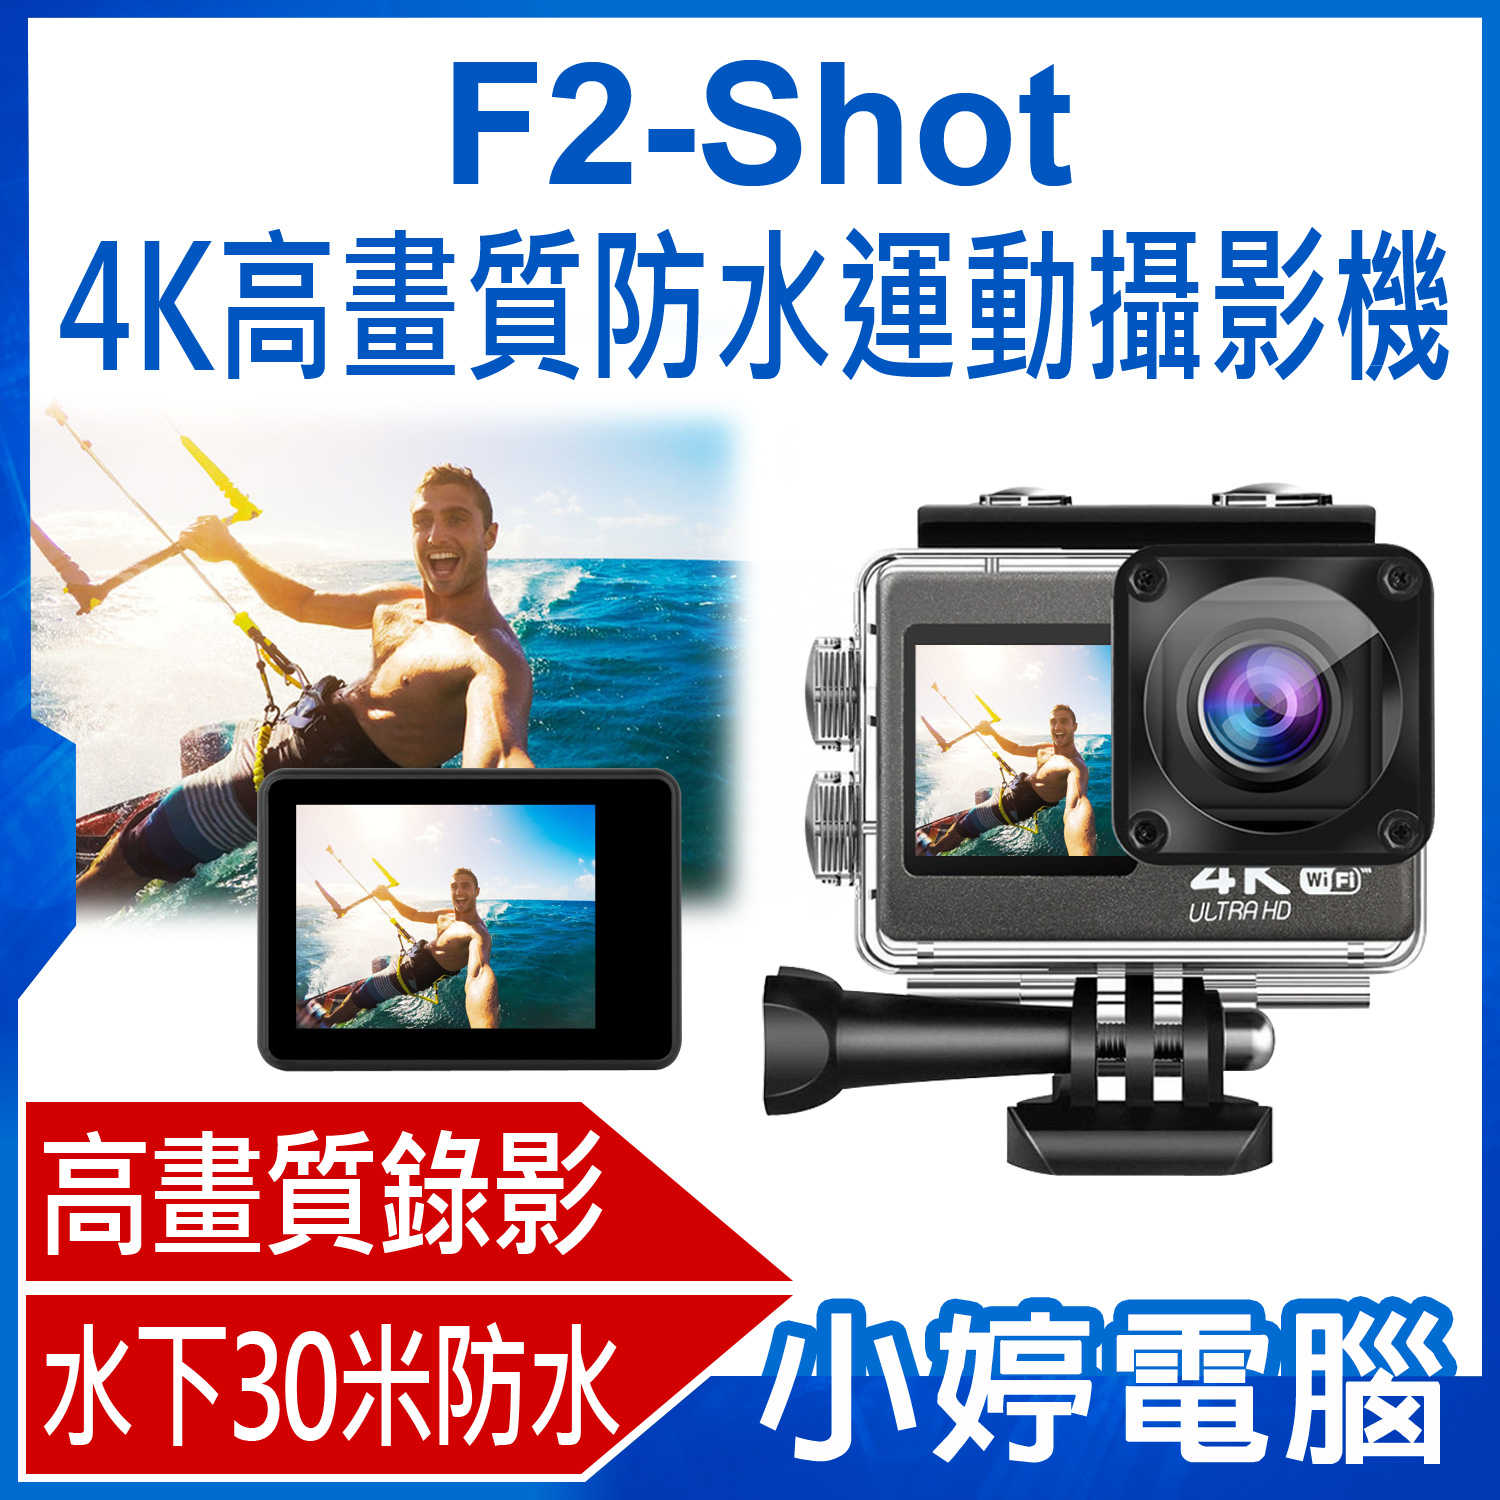 【小婷電腦】F2-Shot 4K高畫質防水運動攝影機 4K高畫質錄影 防水外殼 前後雙螢幕 WIFI連接